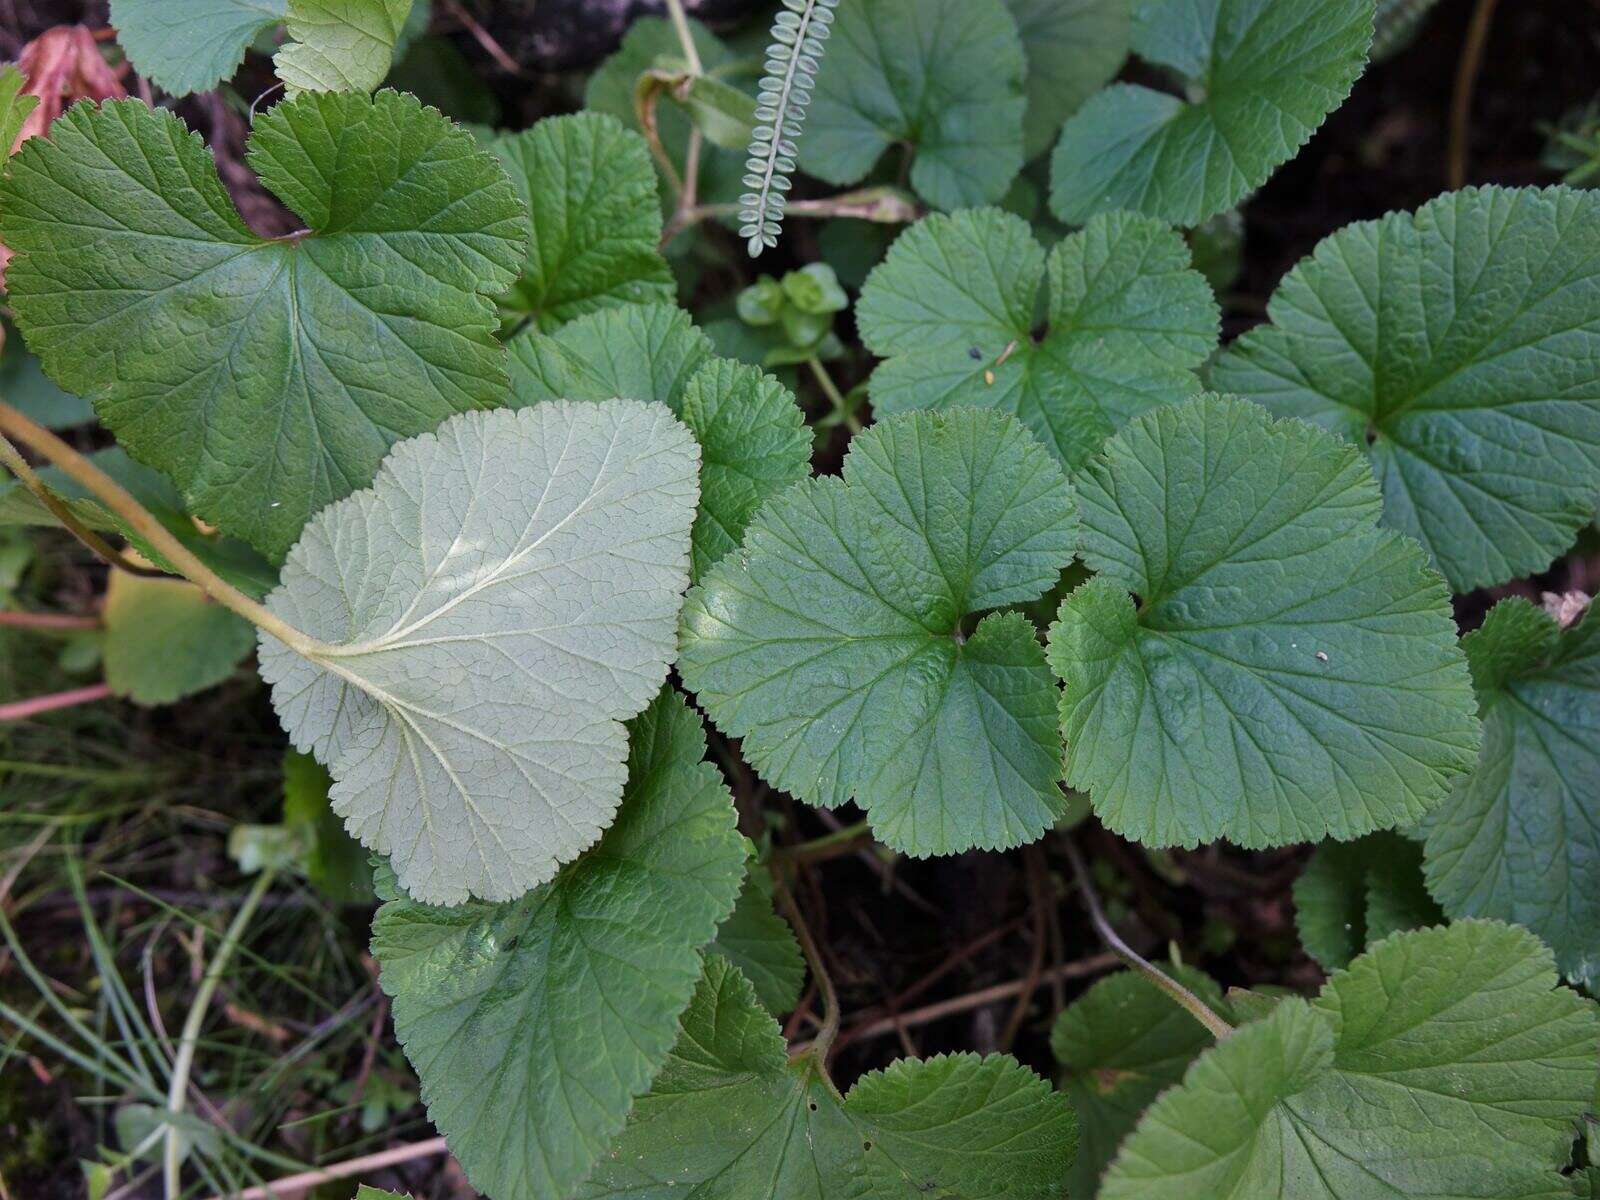 Image of scentless geranium